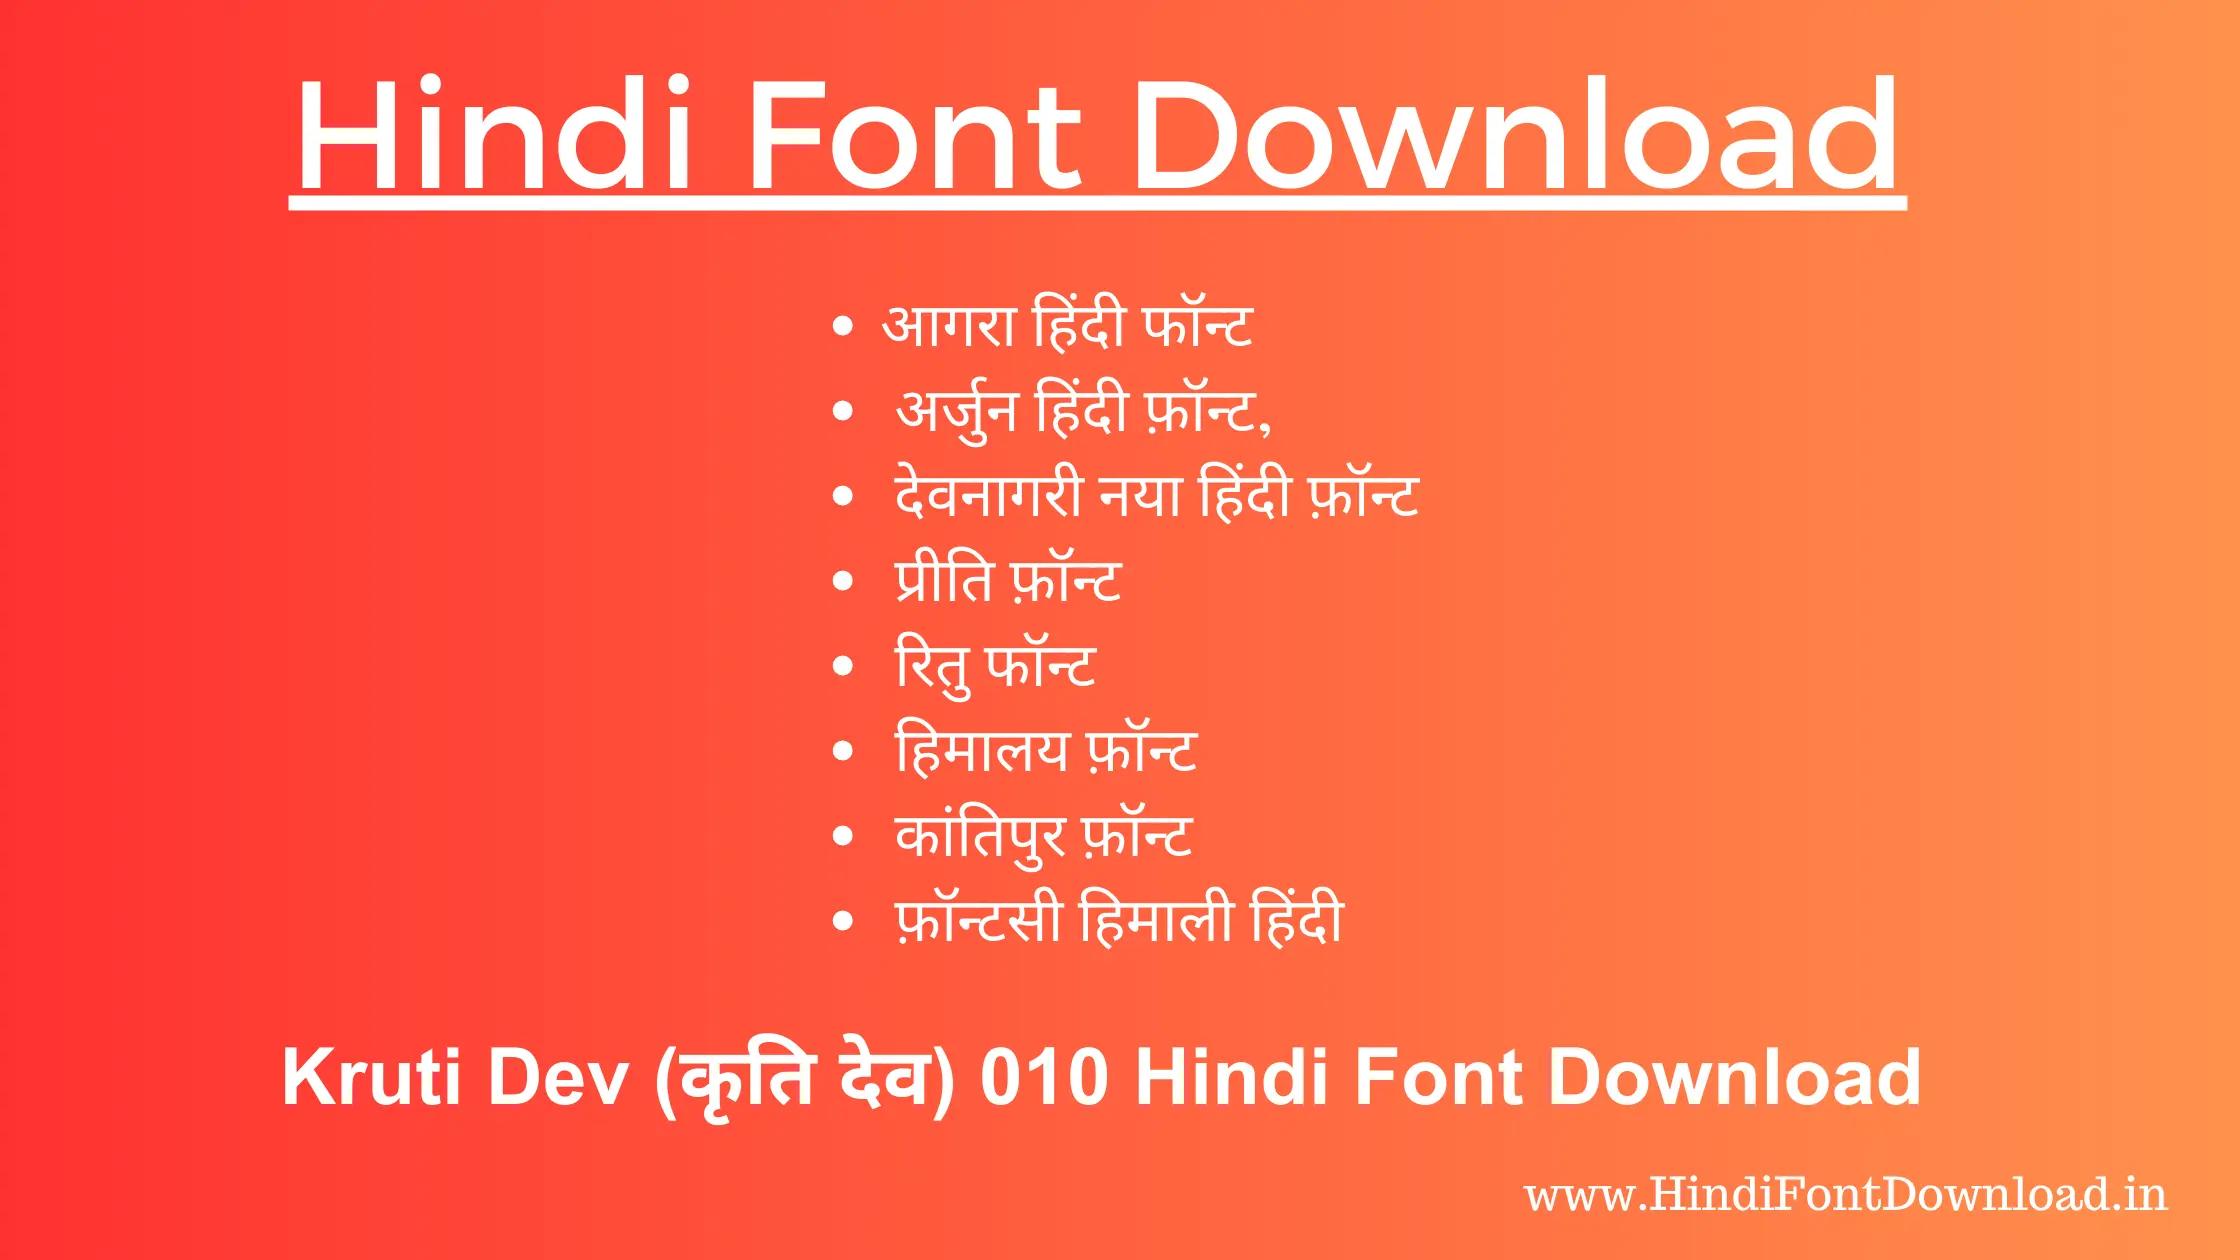 Hindi Font Download